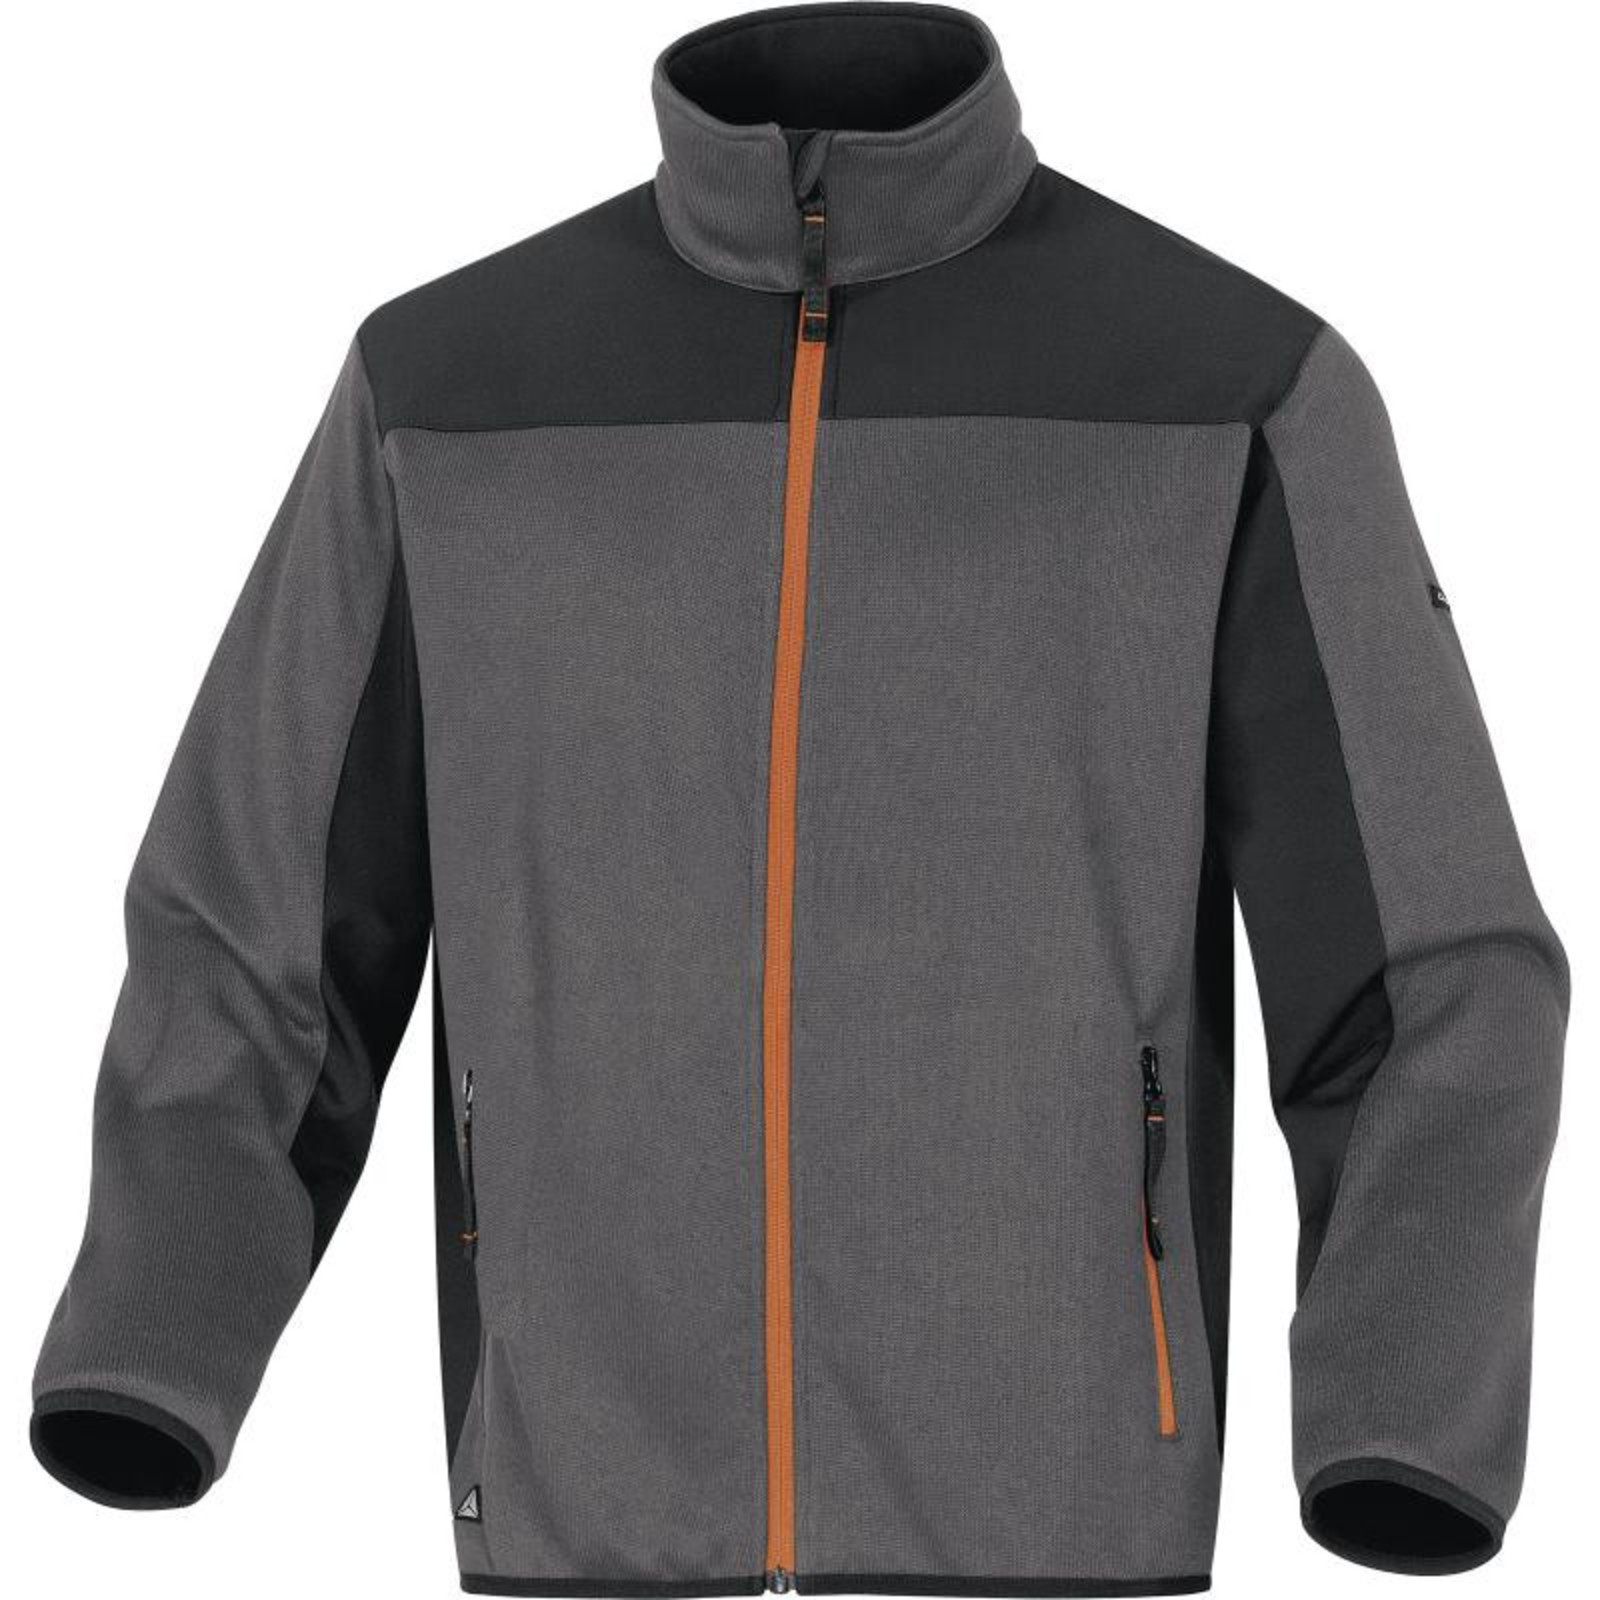 Softshellovo-pleteninová bunda Delta Plus Beaver - veľkosť: S, farba: sivá/oranžová